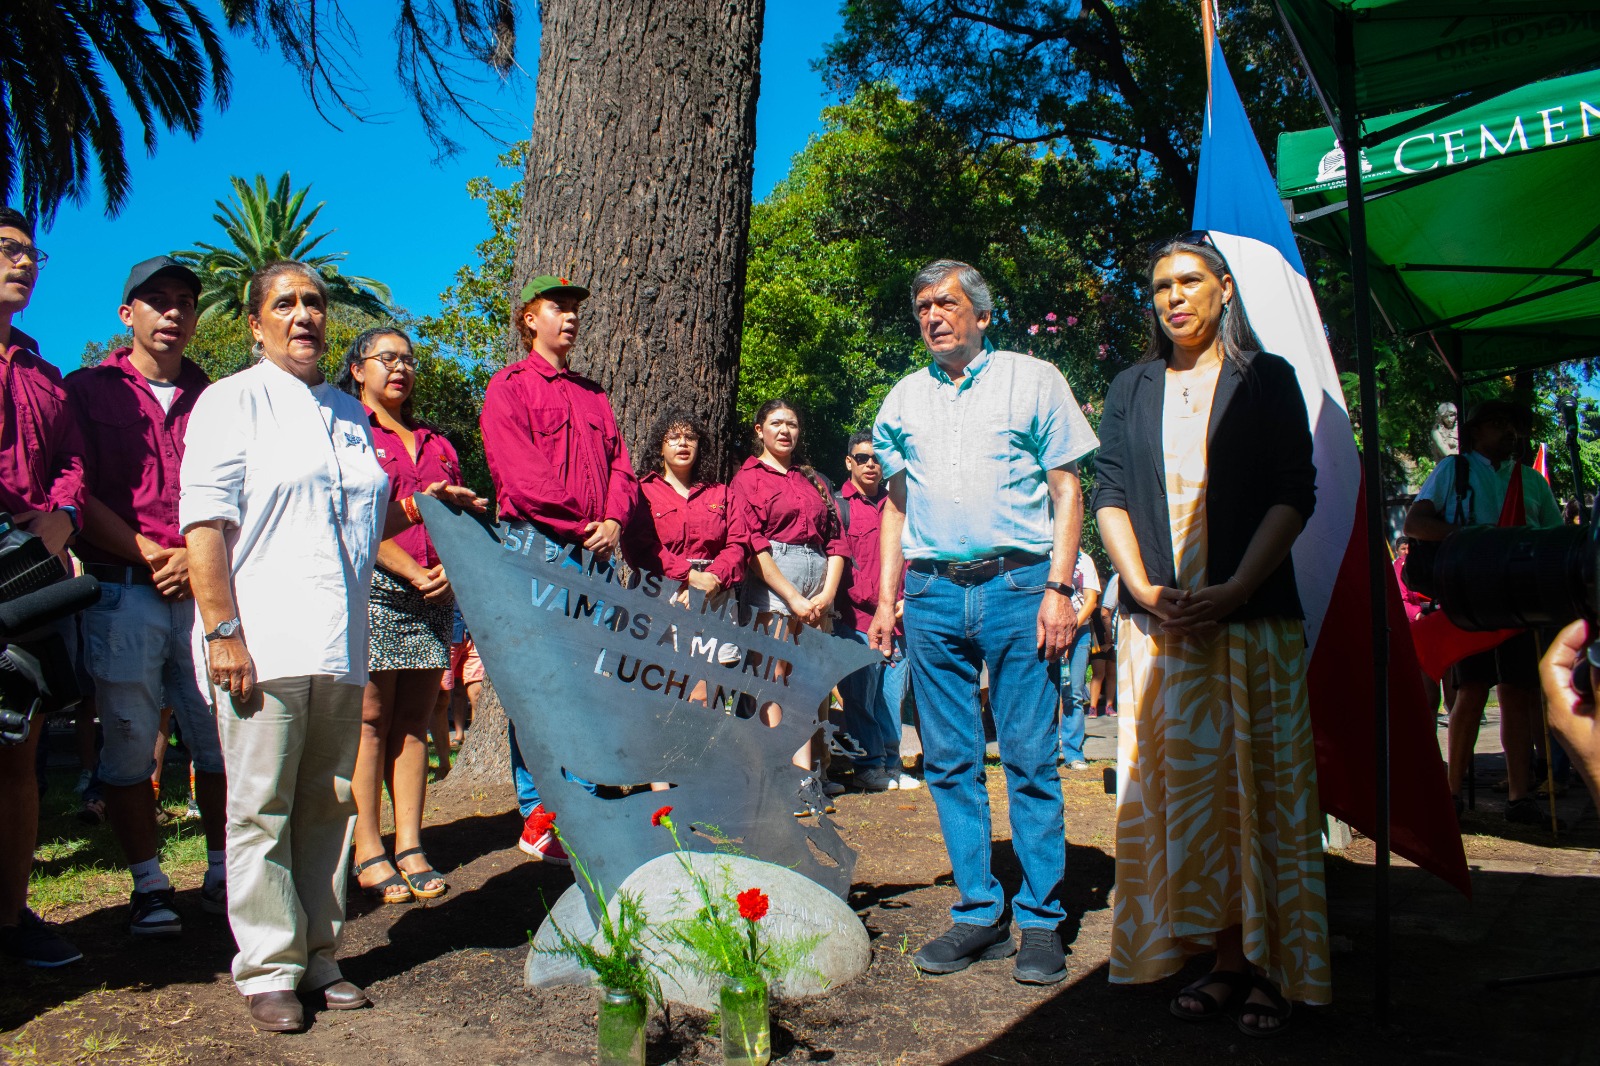 En Cementerio General, PC inaugura memorial a Guillermo Teillier: “Si vamos a morir, vamos a morir luchando”